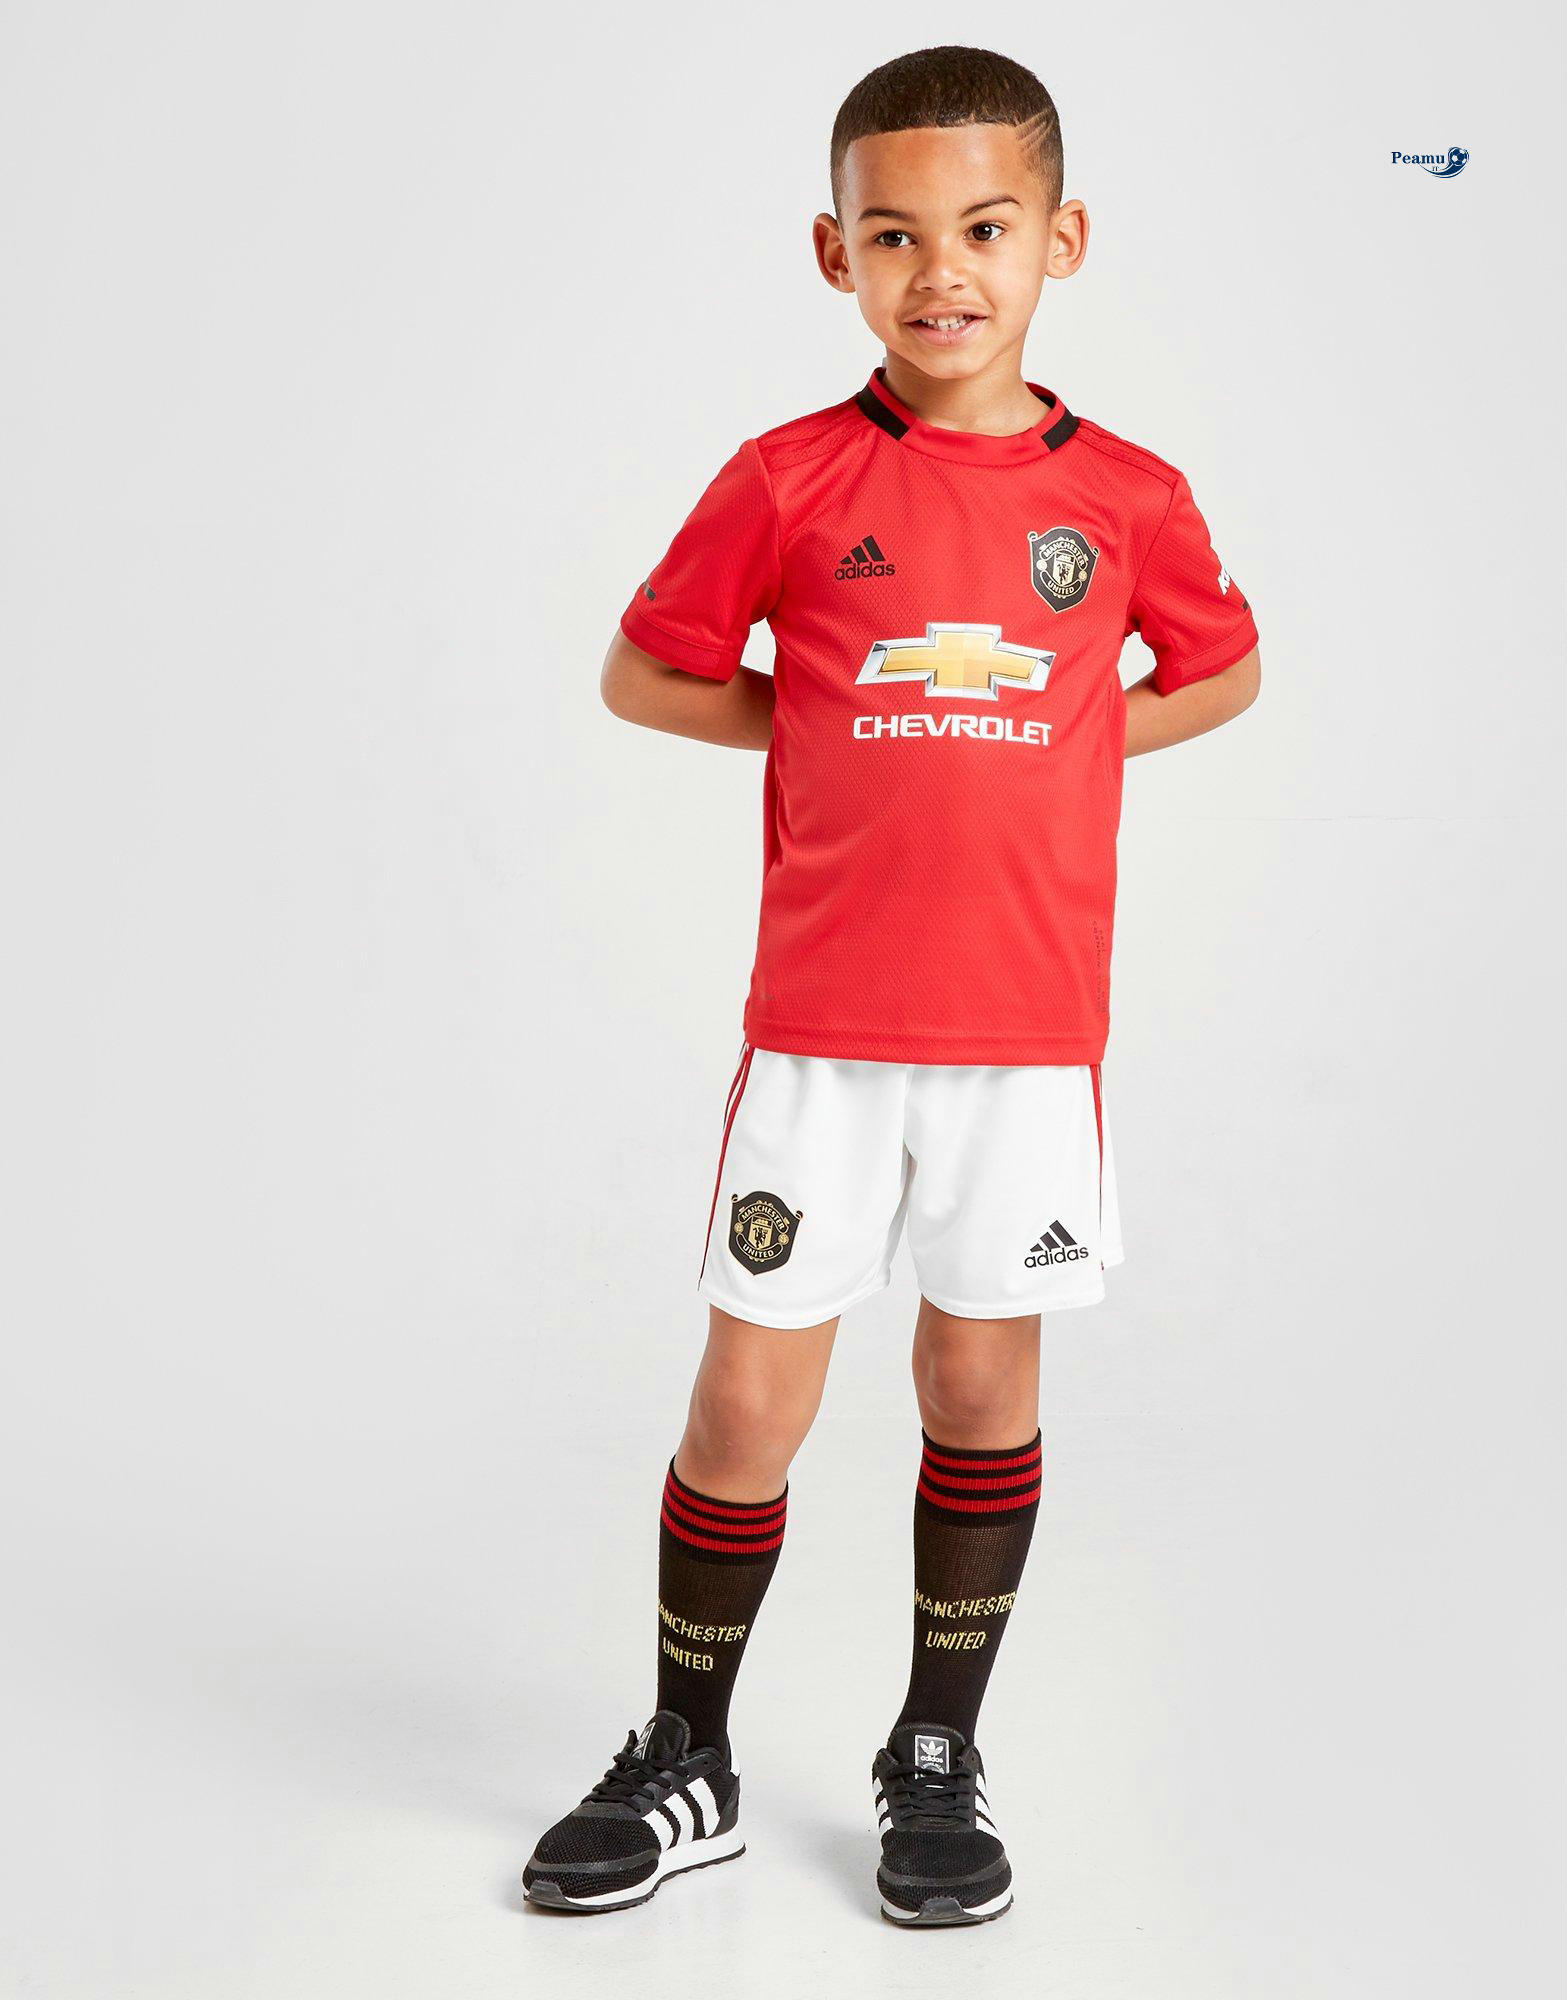 Maillot foot Manchester united Enfant Domicile 2019-2020